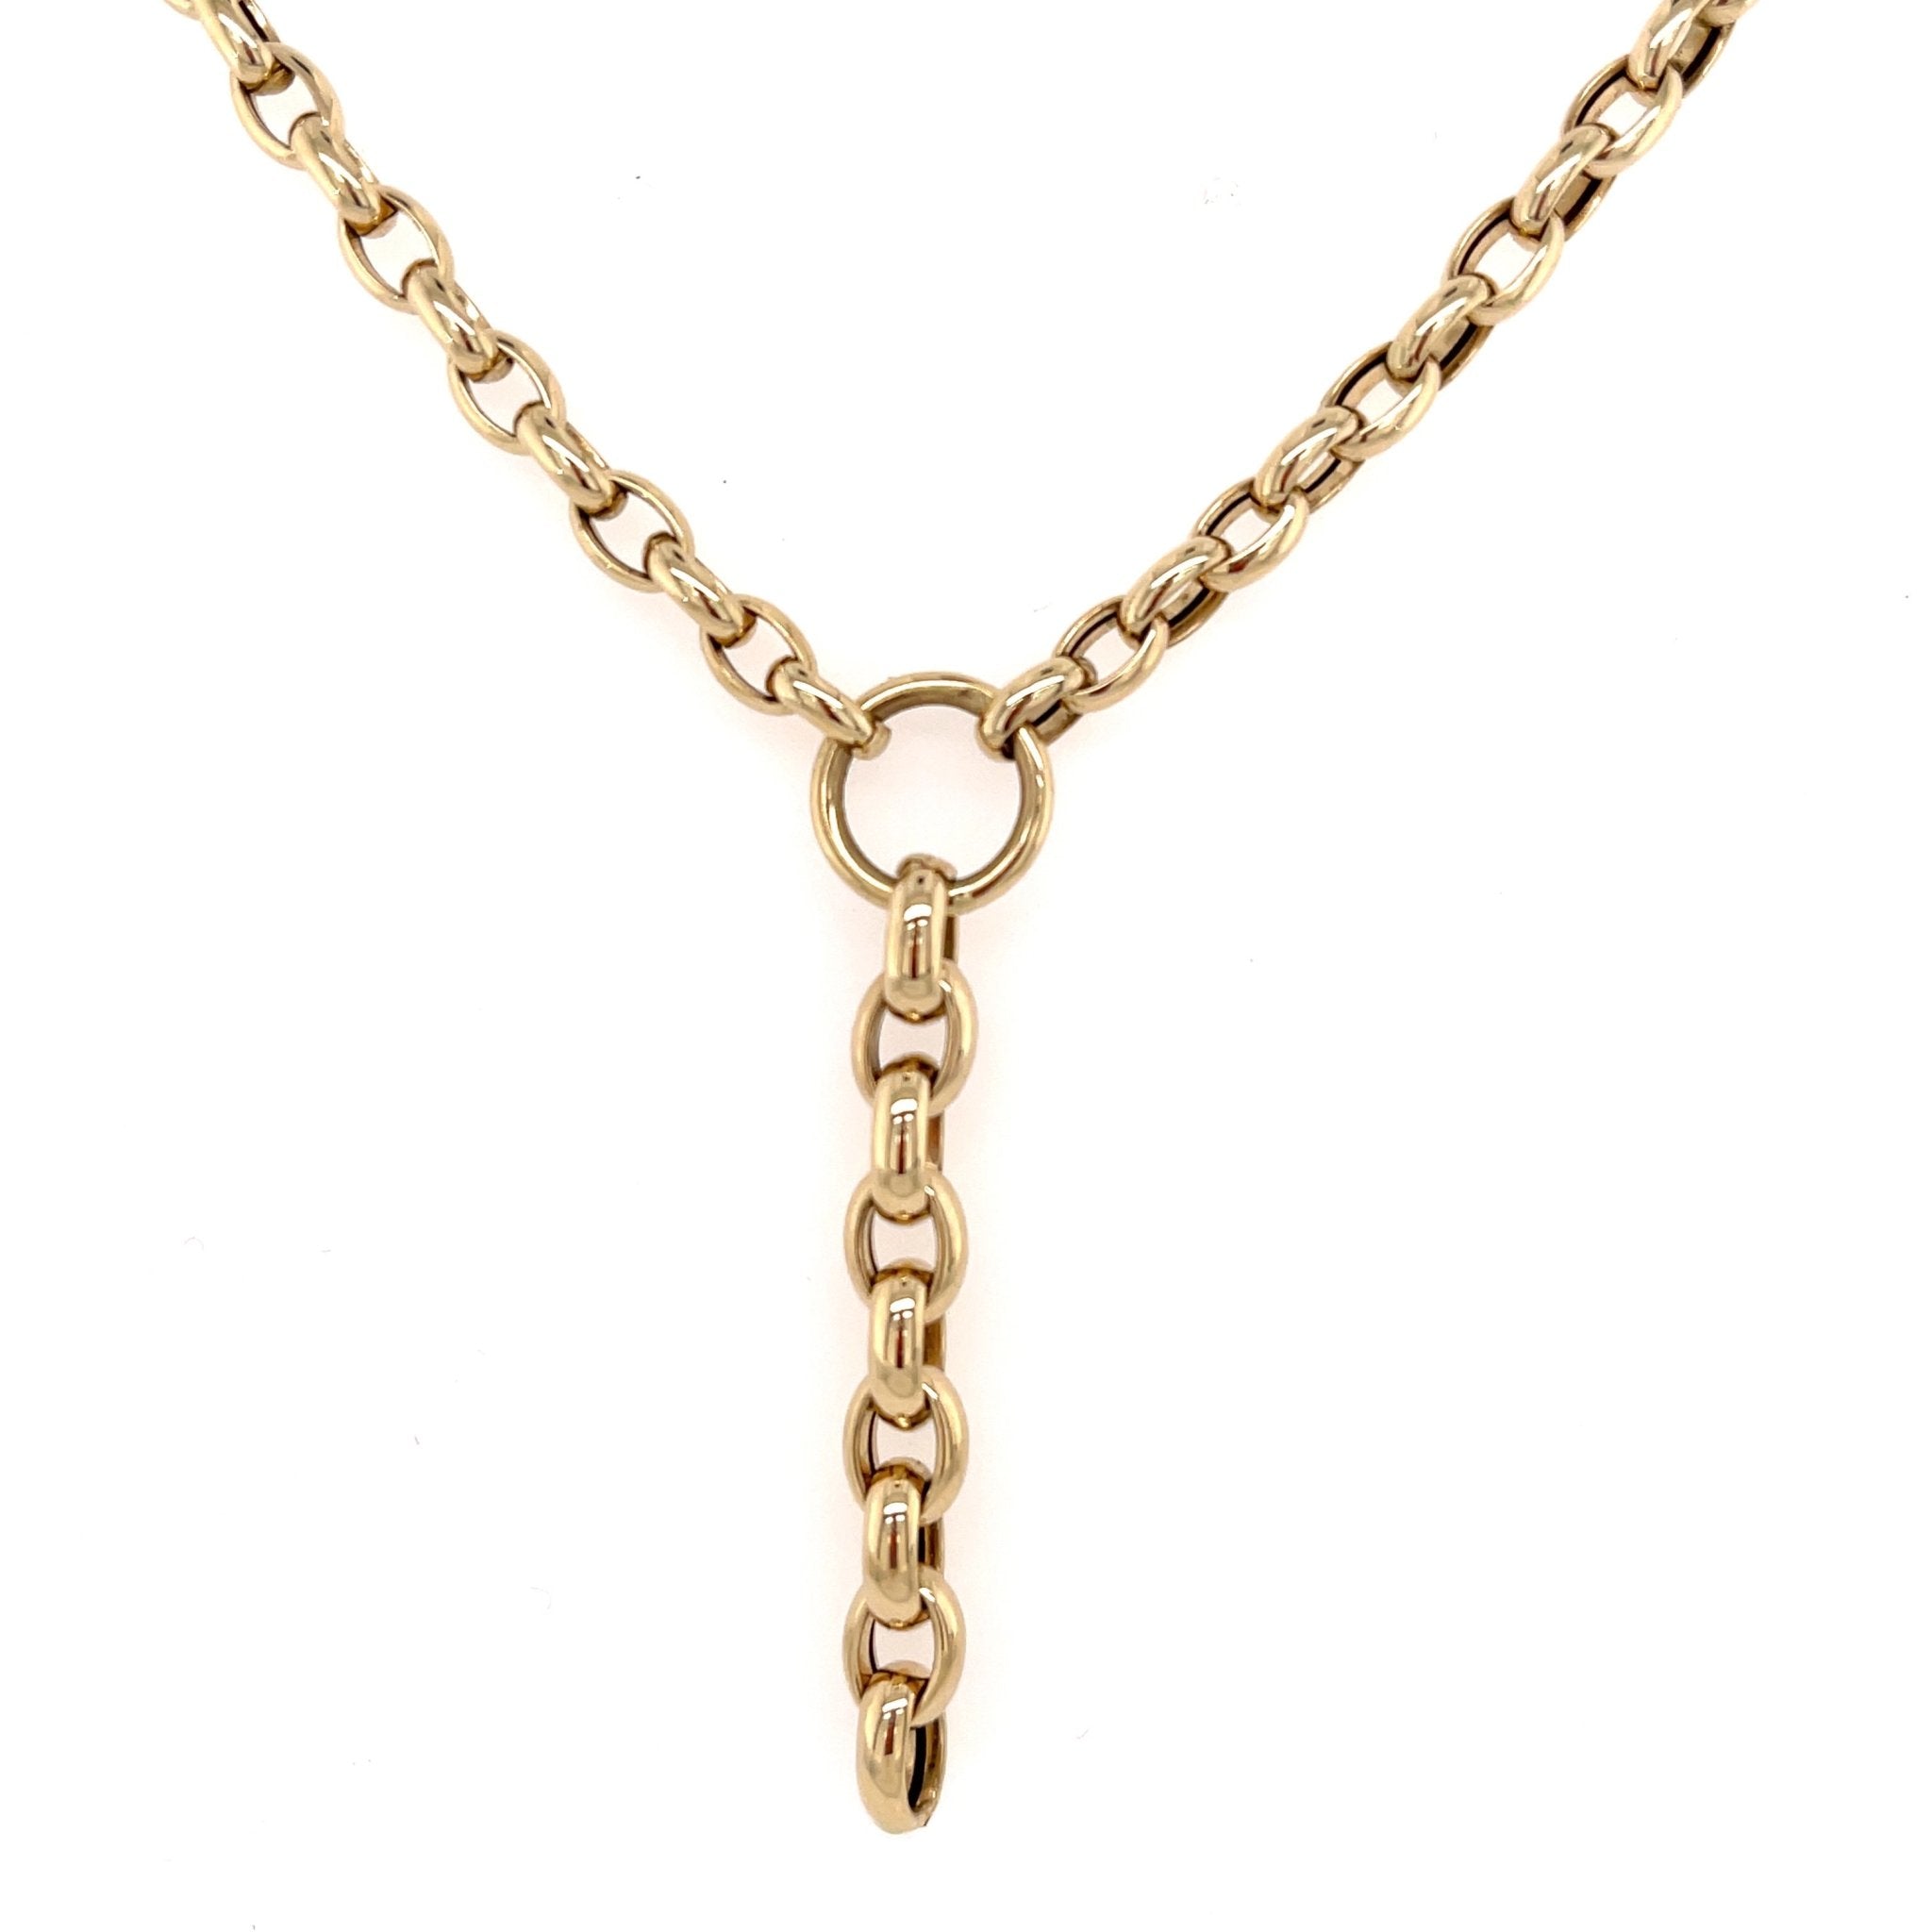 Luxe belcher chain necklace - Von Treskow